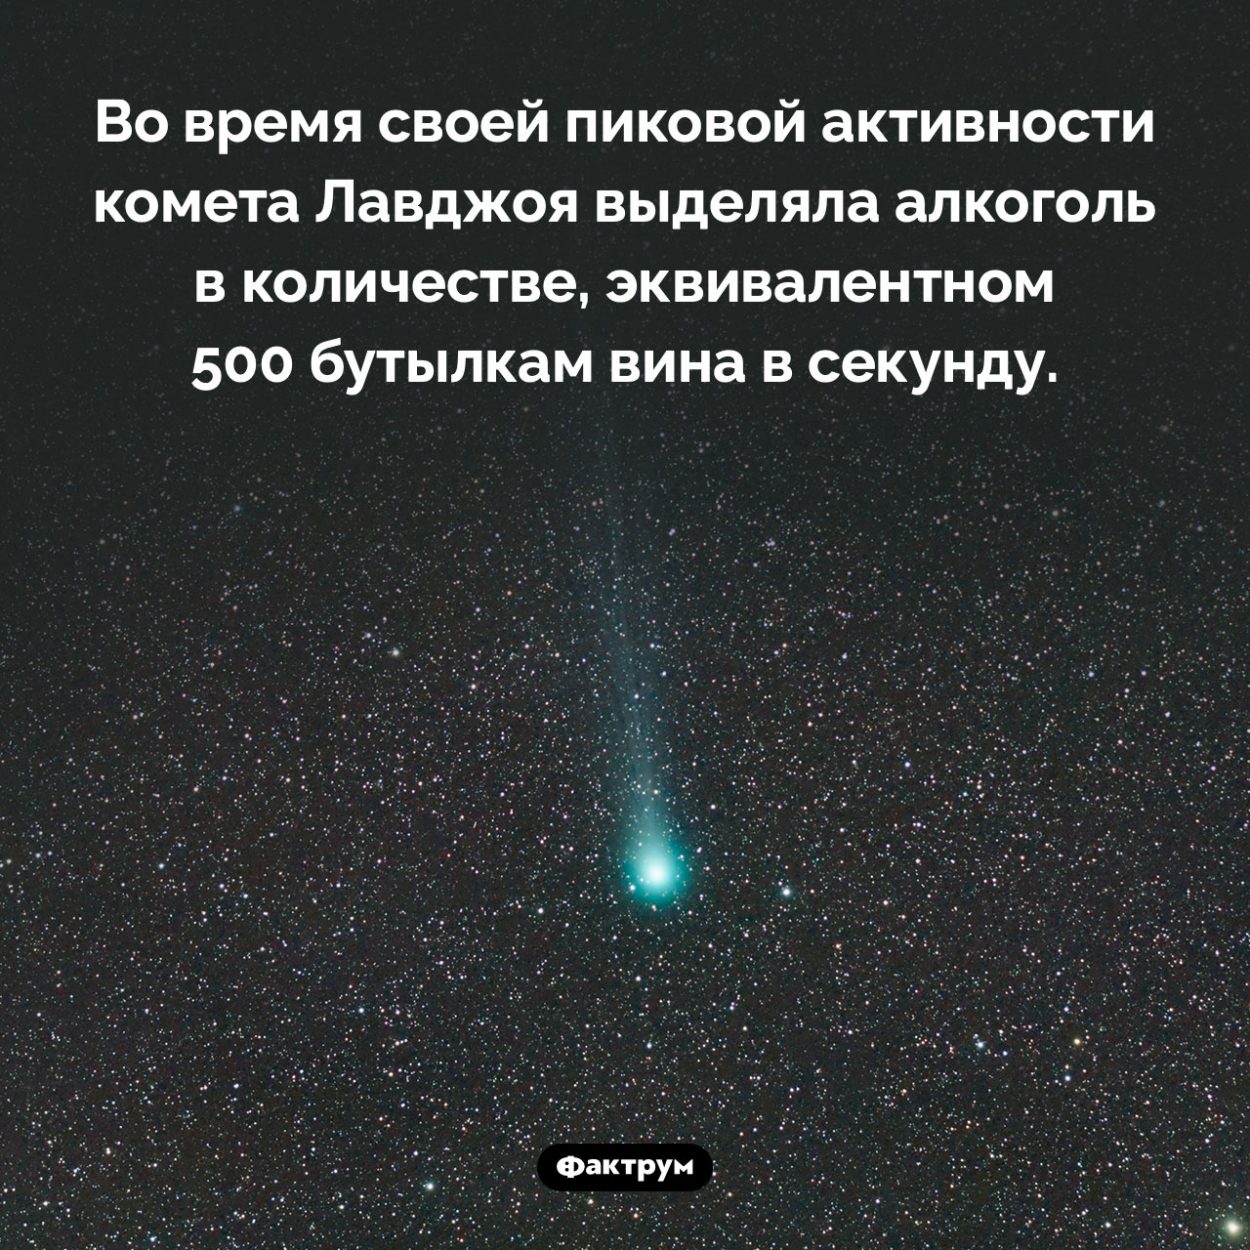 Алкоголь кометы Лавджоя. Во время своей пиковой активности комета Лавджоя выделяла алкоголь в количестве, эквивалентном 500 бутылкам вина в секунду. 